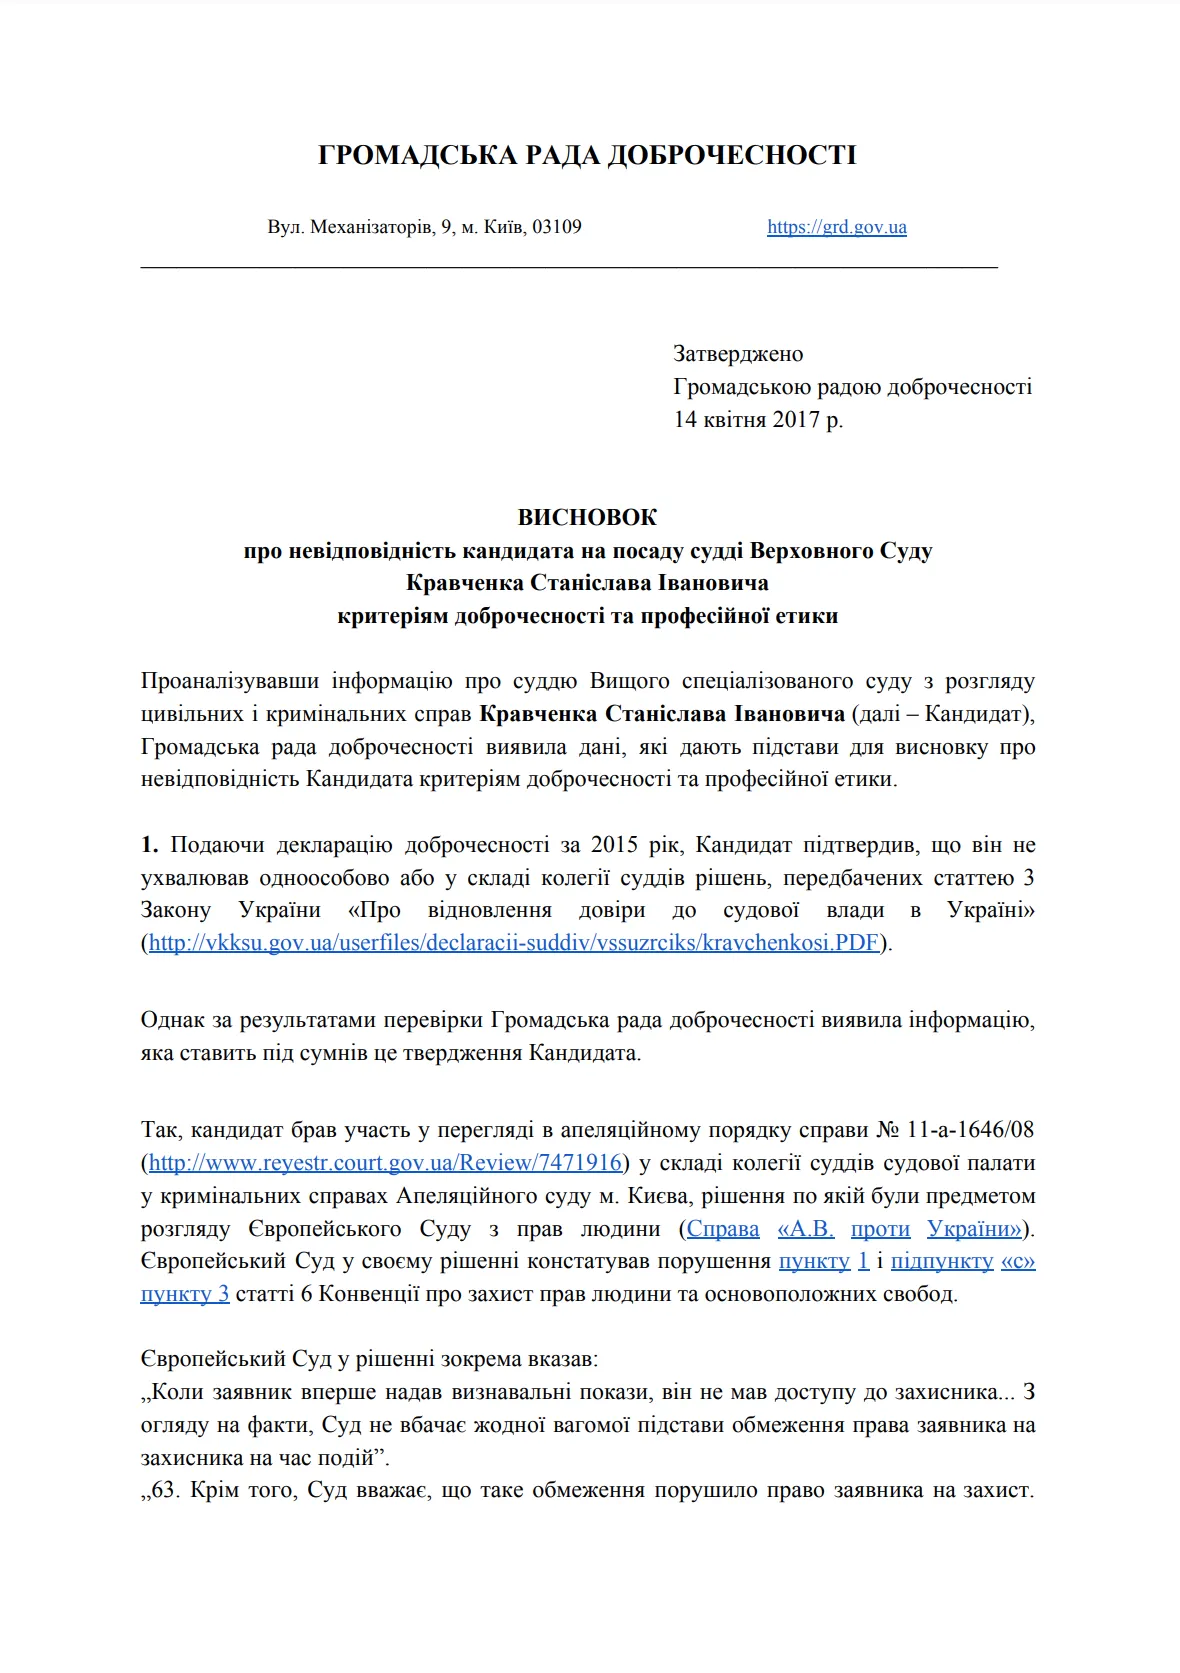 Вывод ГРД в отношении судьи Кравченко